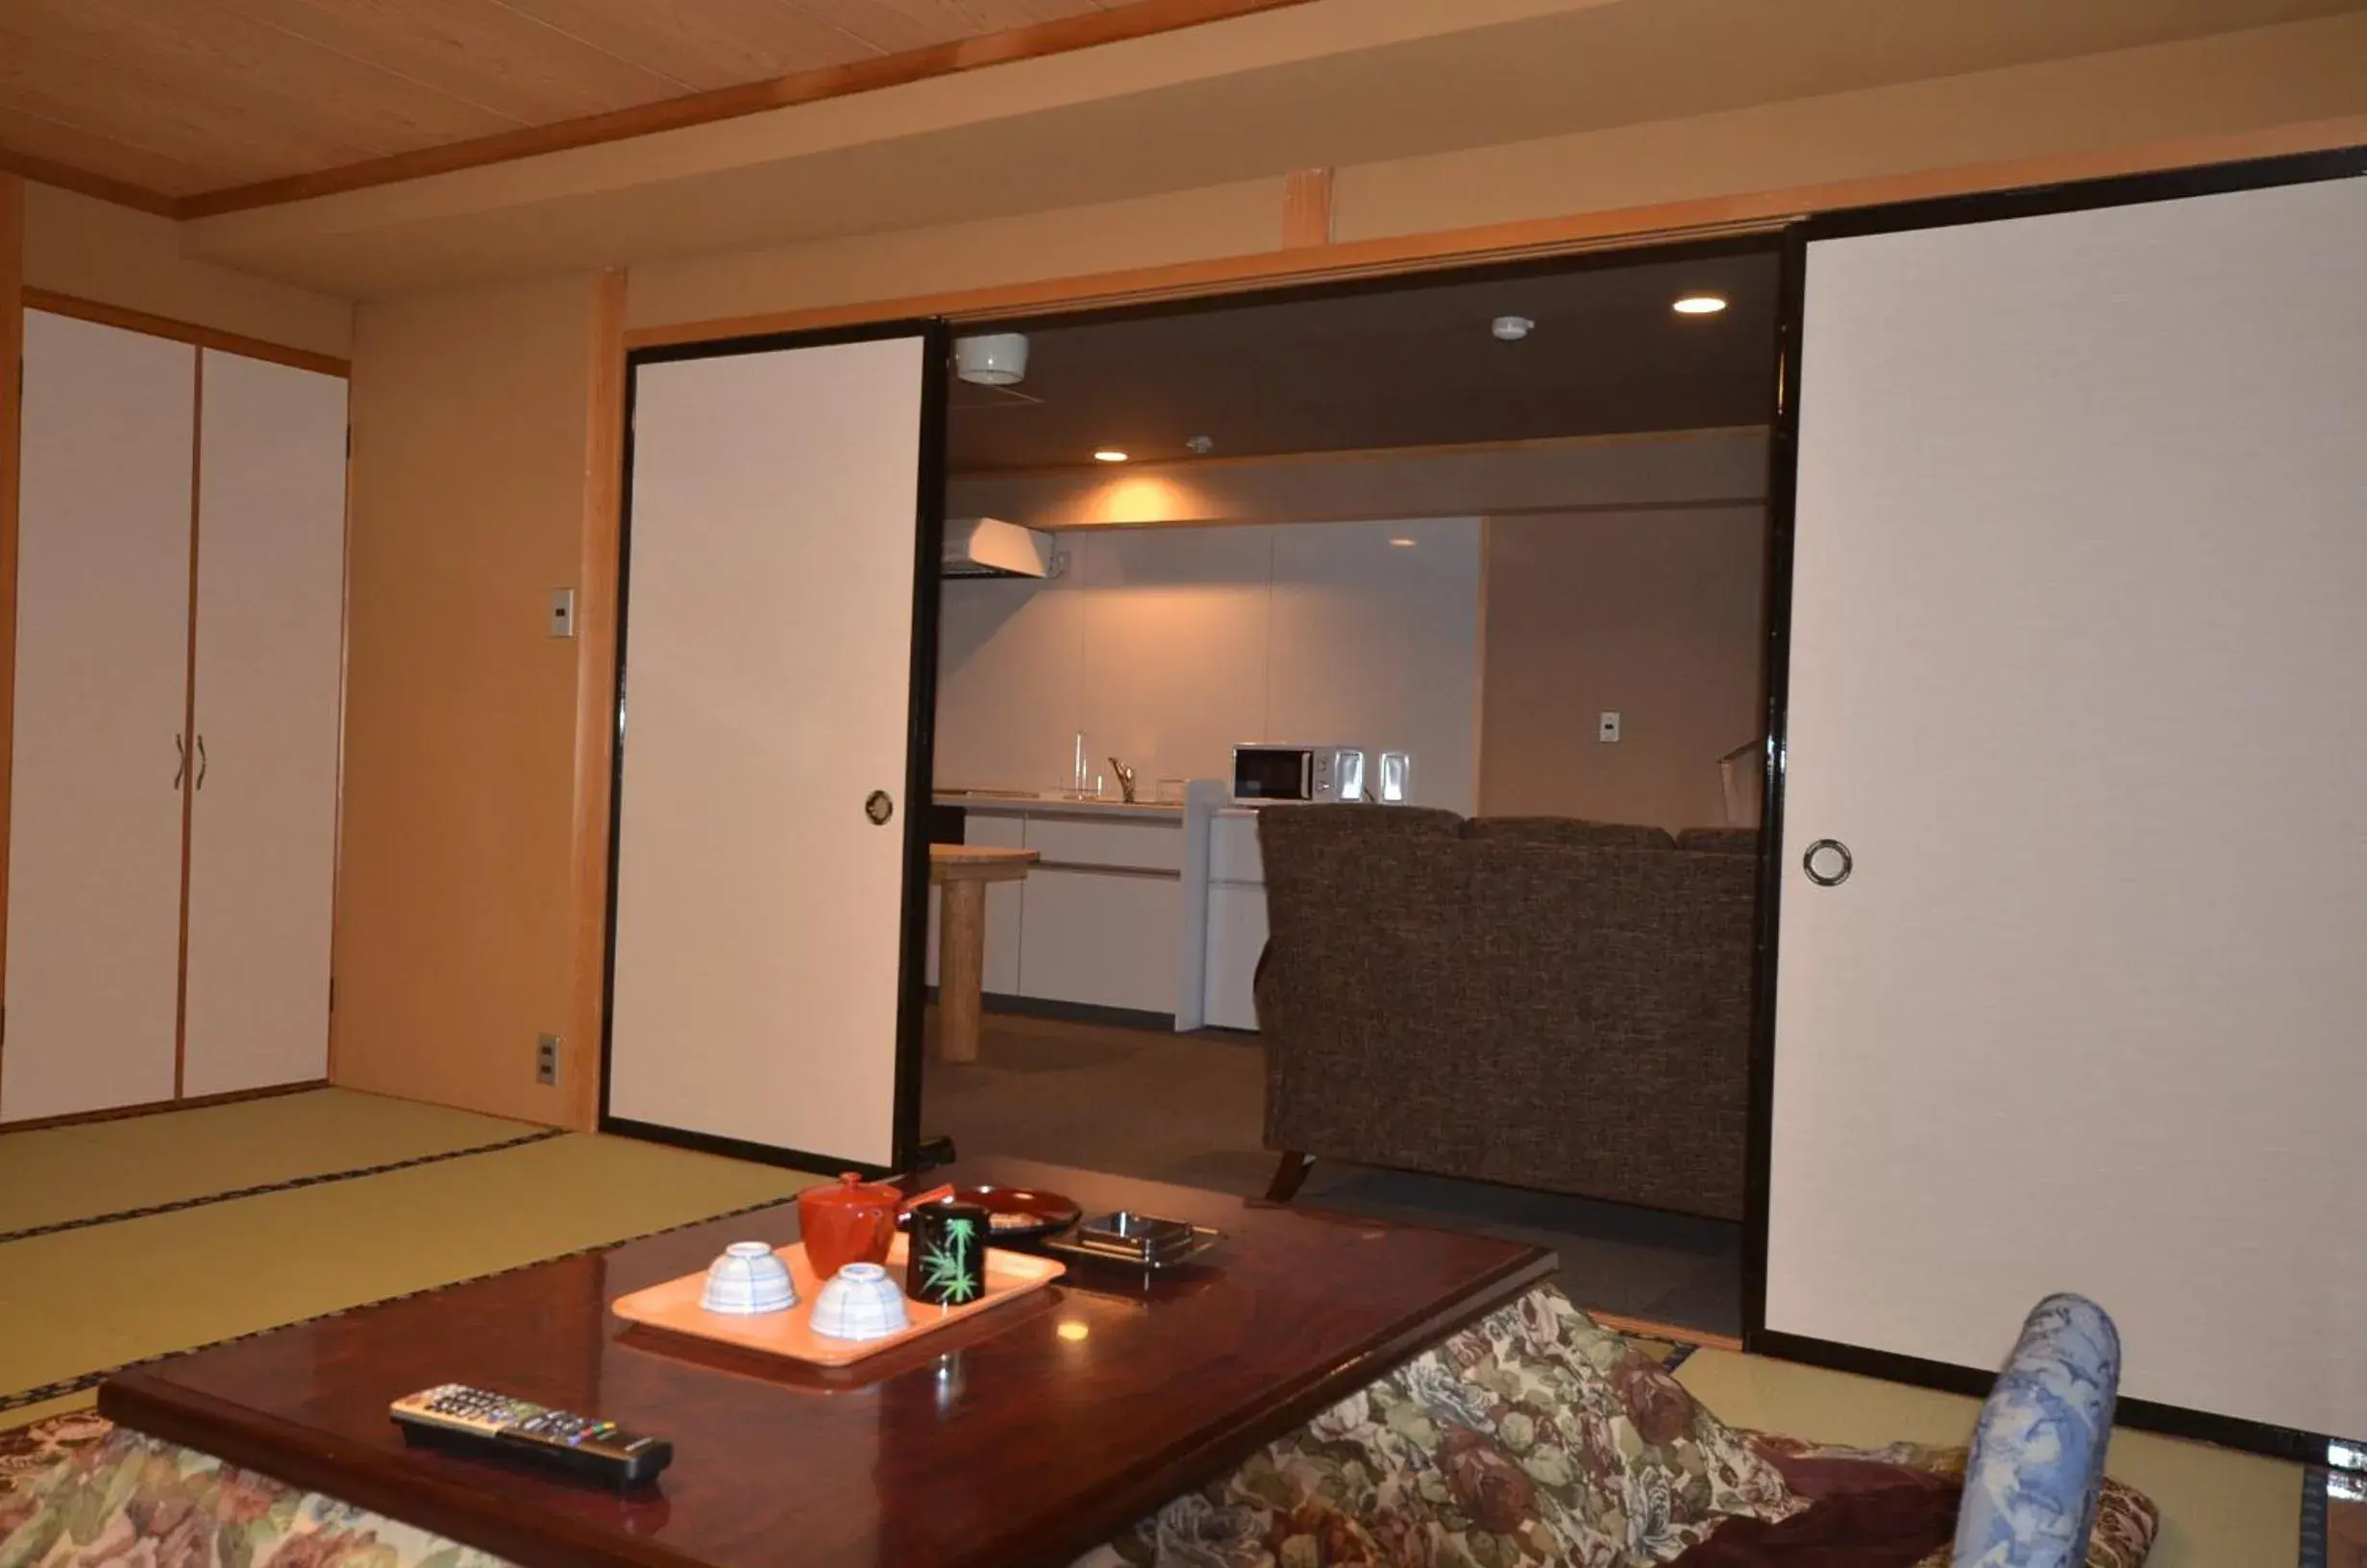 Dining area, Lobby/Reception in Shiga Palace Hotel